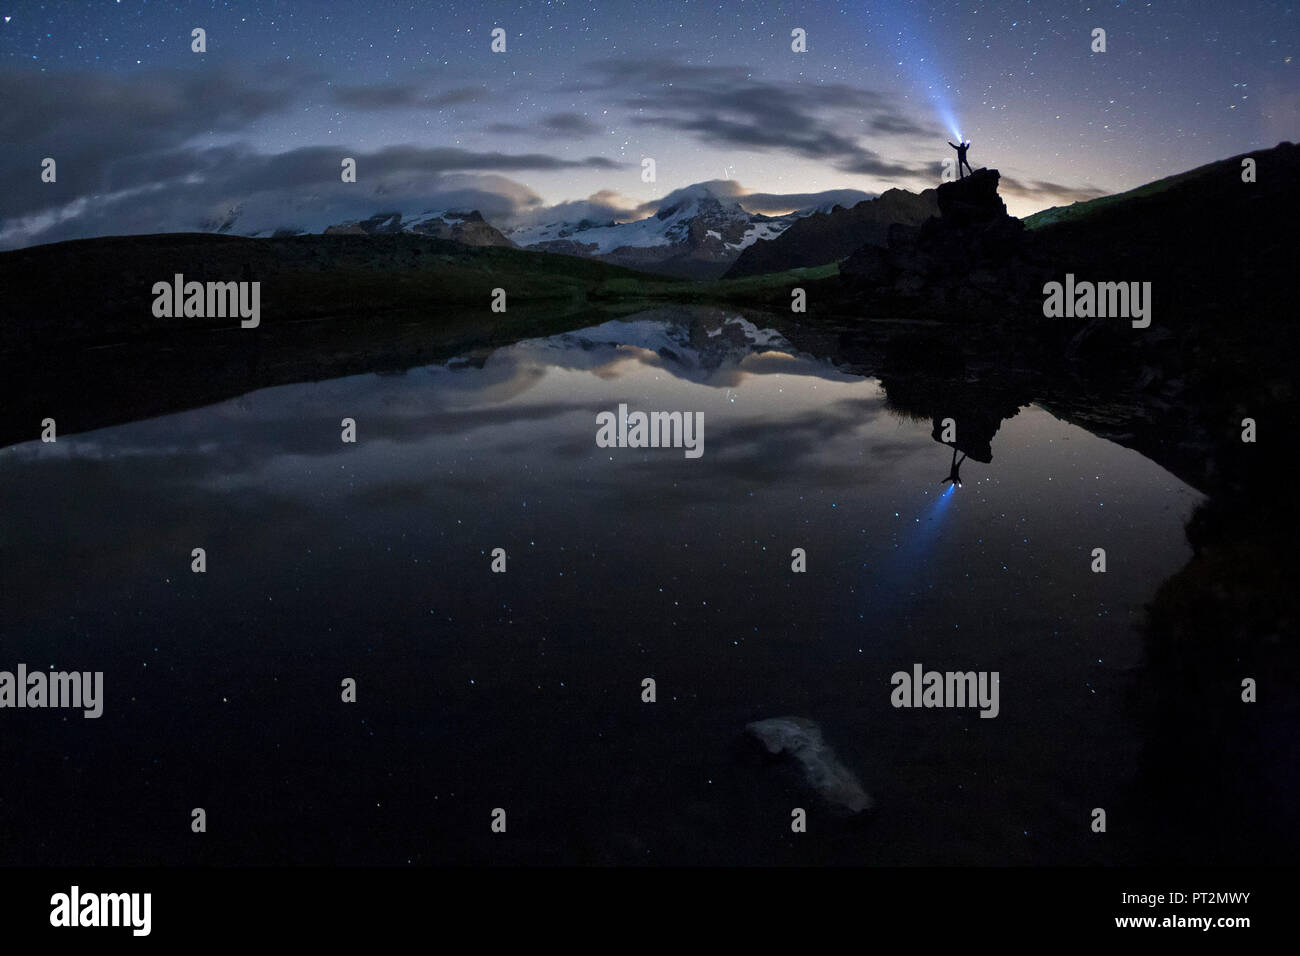 Randonneur avec le flambeau reflétée dans le petit lac du Pian Borgno, Valsavarenche, vallée d'aoste, Italie Banque D'Images